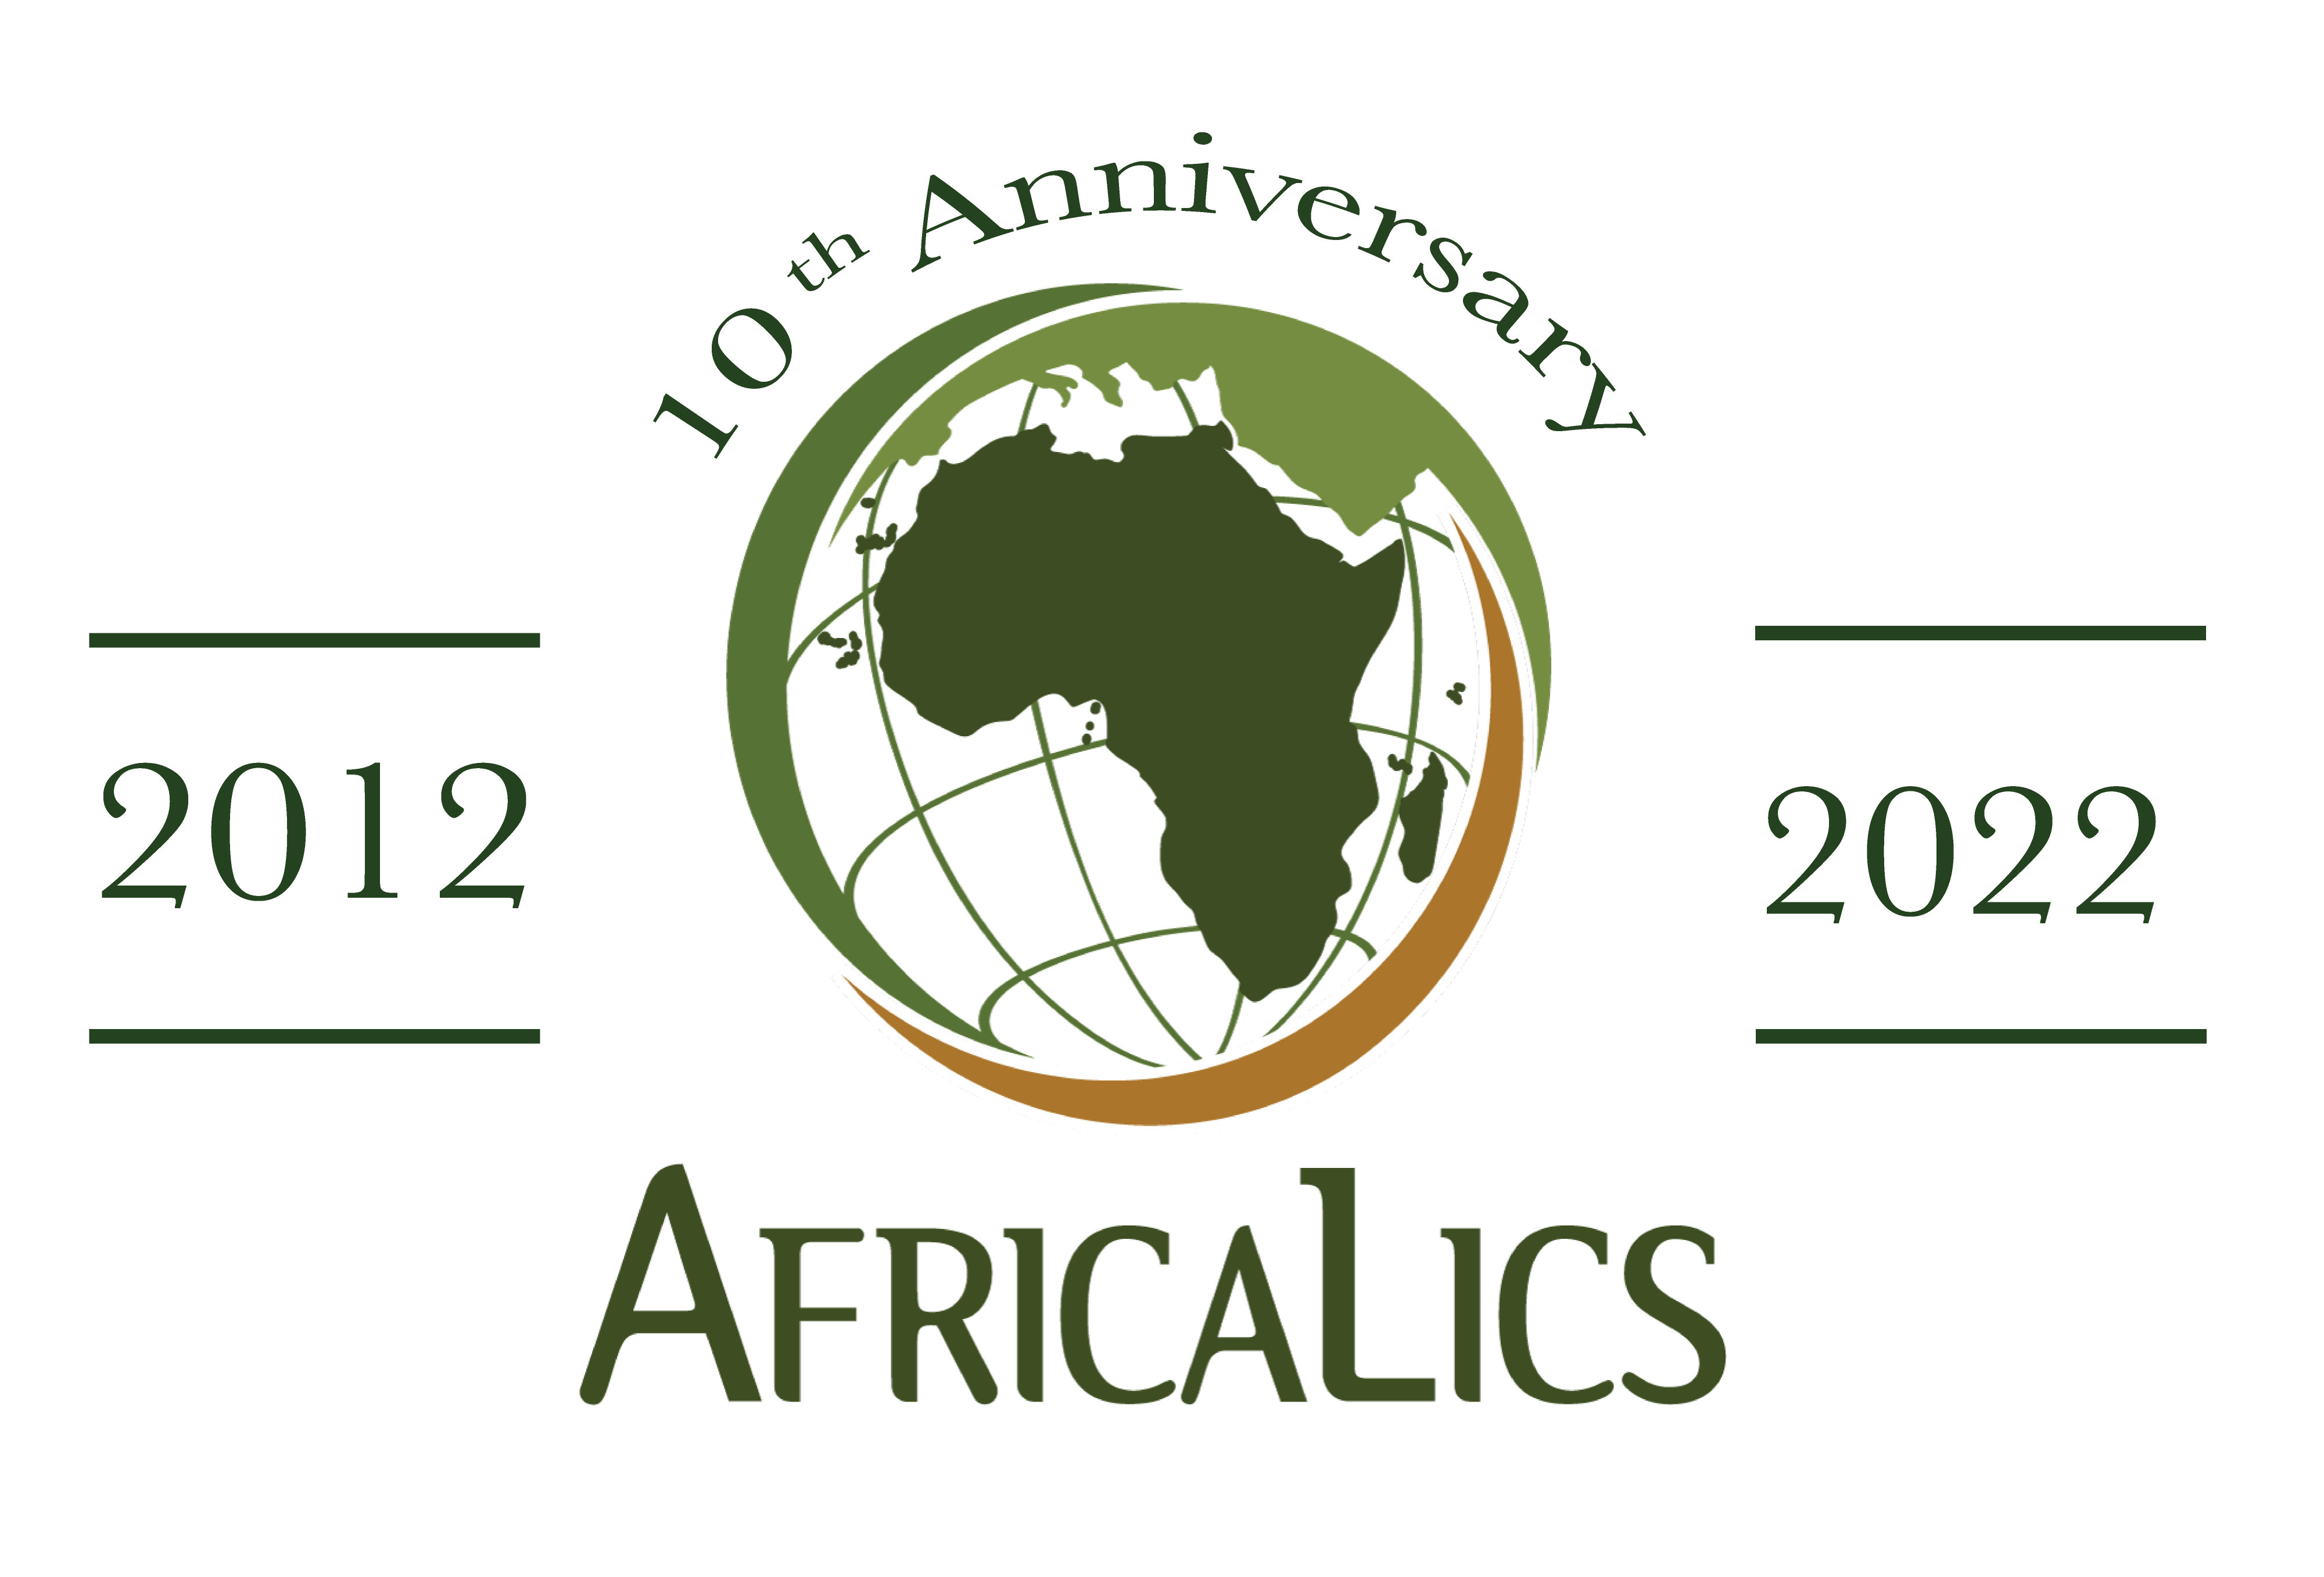 AfricaLics@10